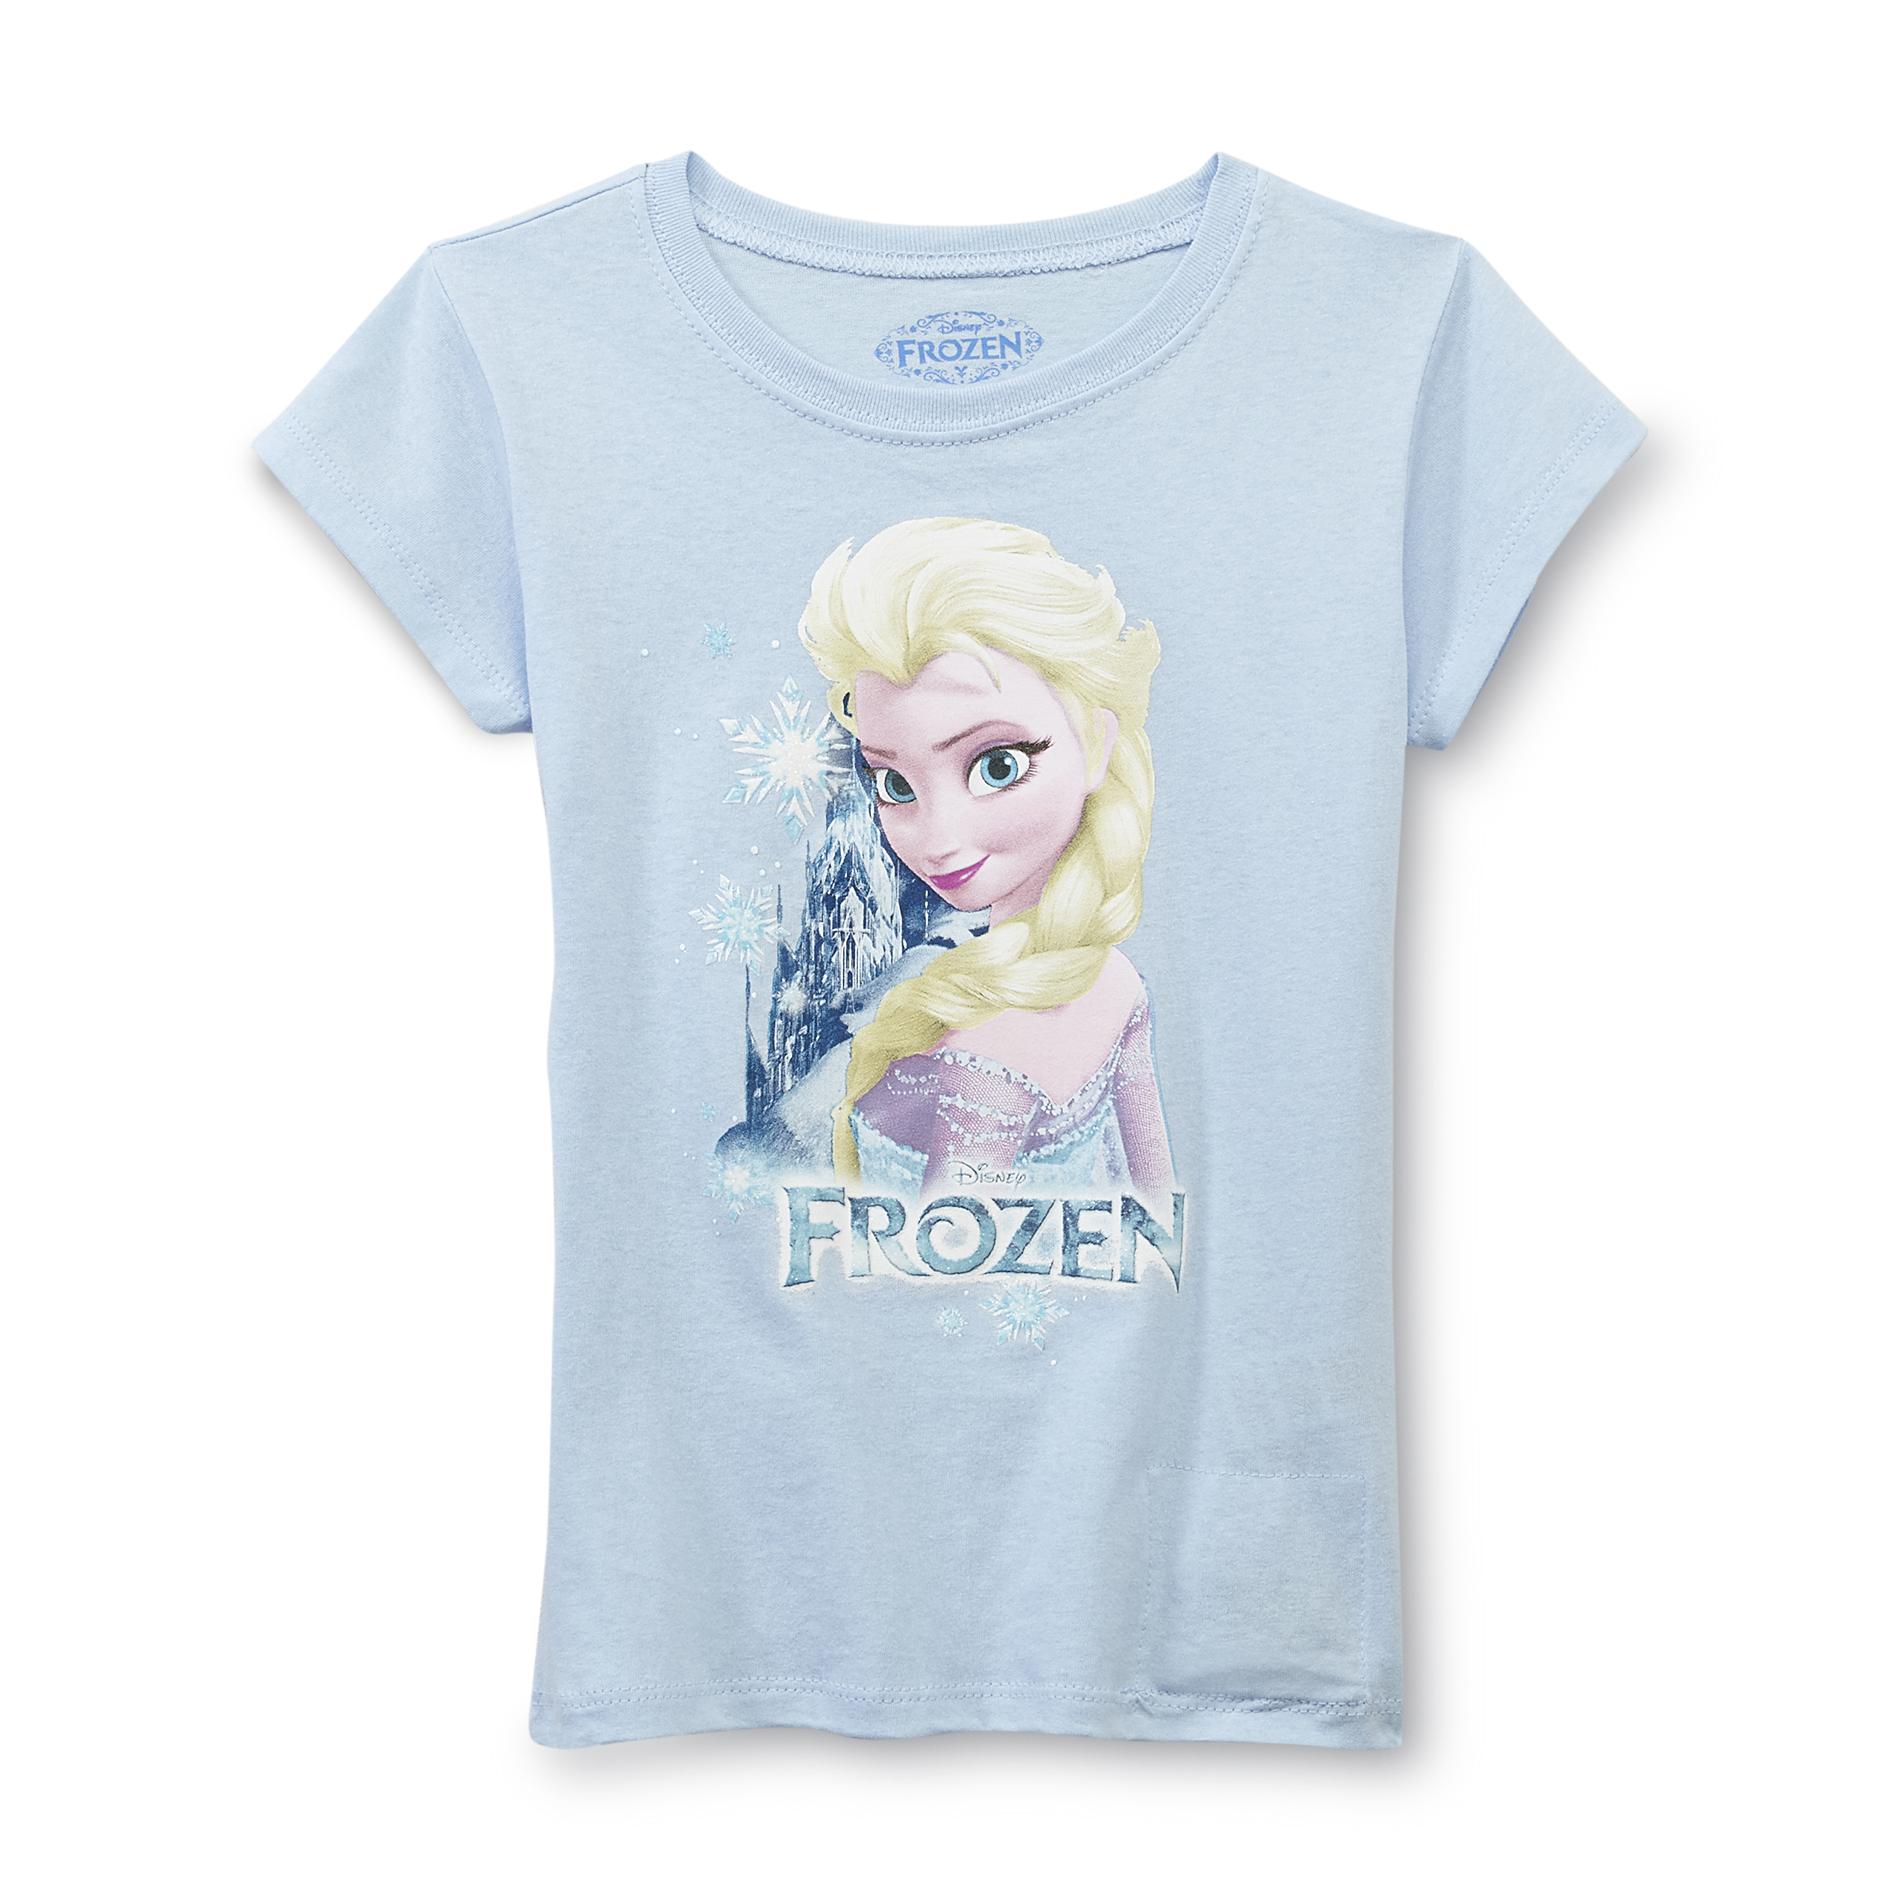 Disney Frozen Girl's Singing Top - Elsa